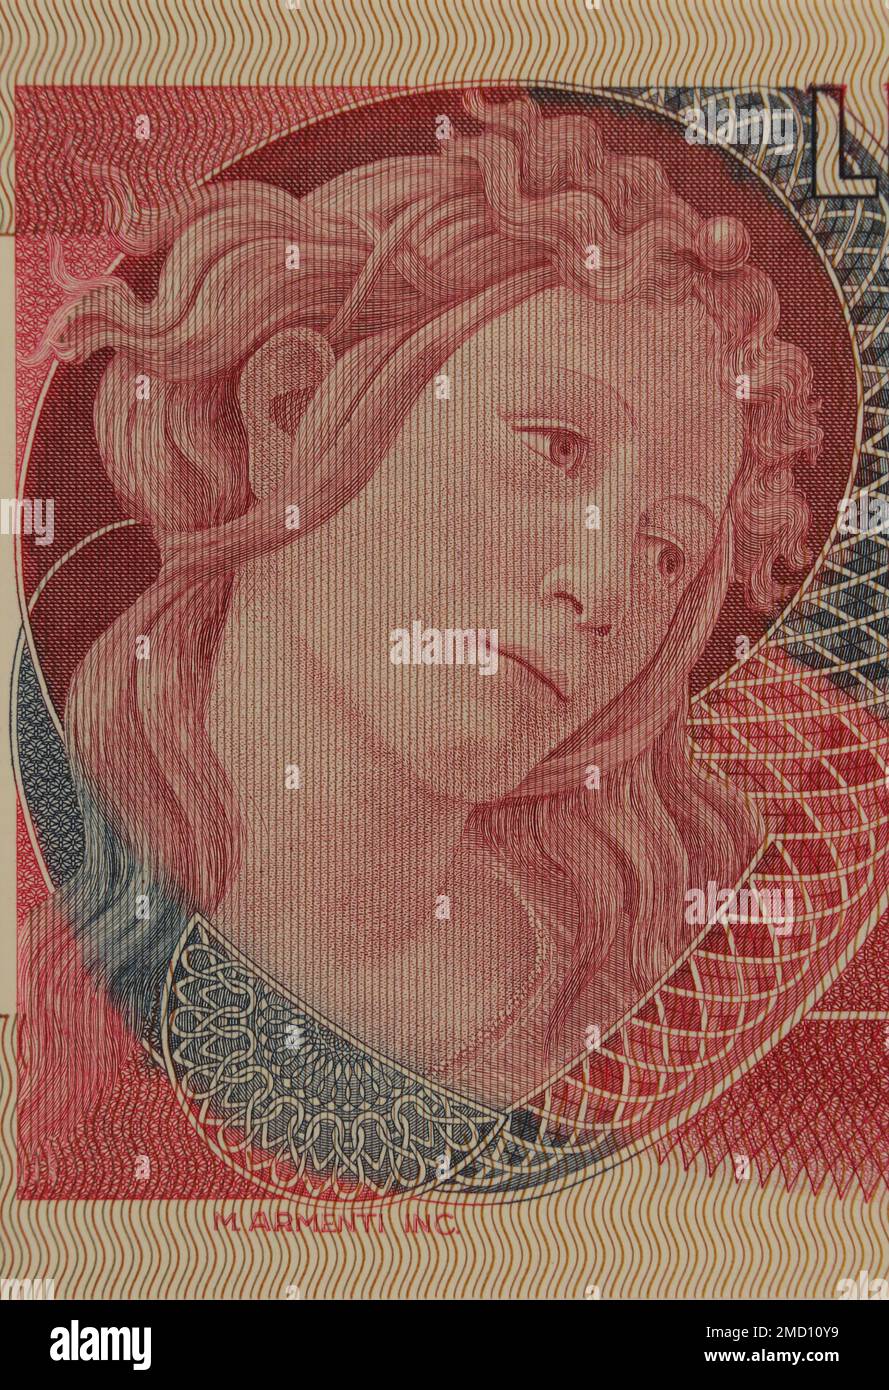 Détail du portrait de l'une des trois grâces de Sandro Botticelli sur un billet de banque italien vintage Banque D'Images